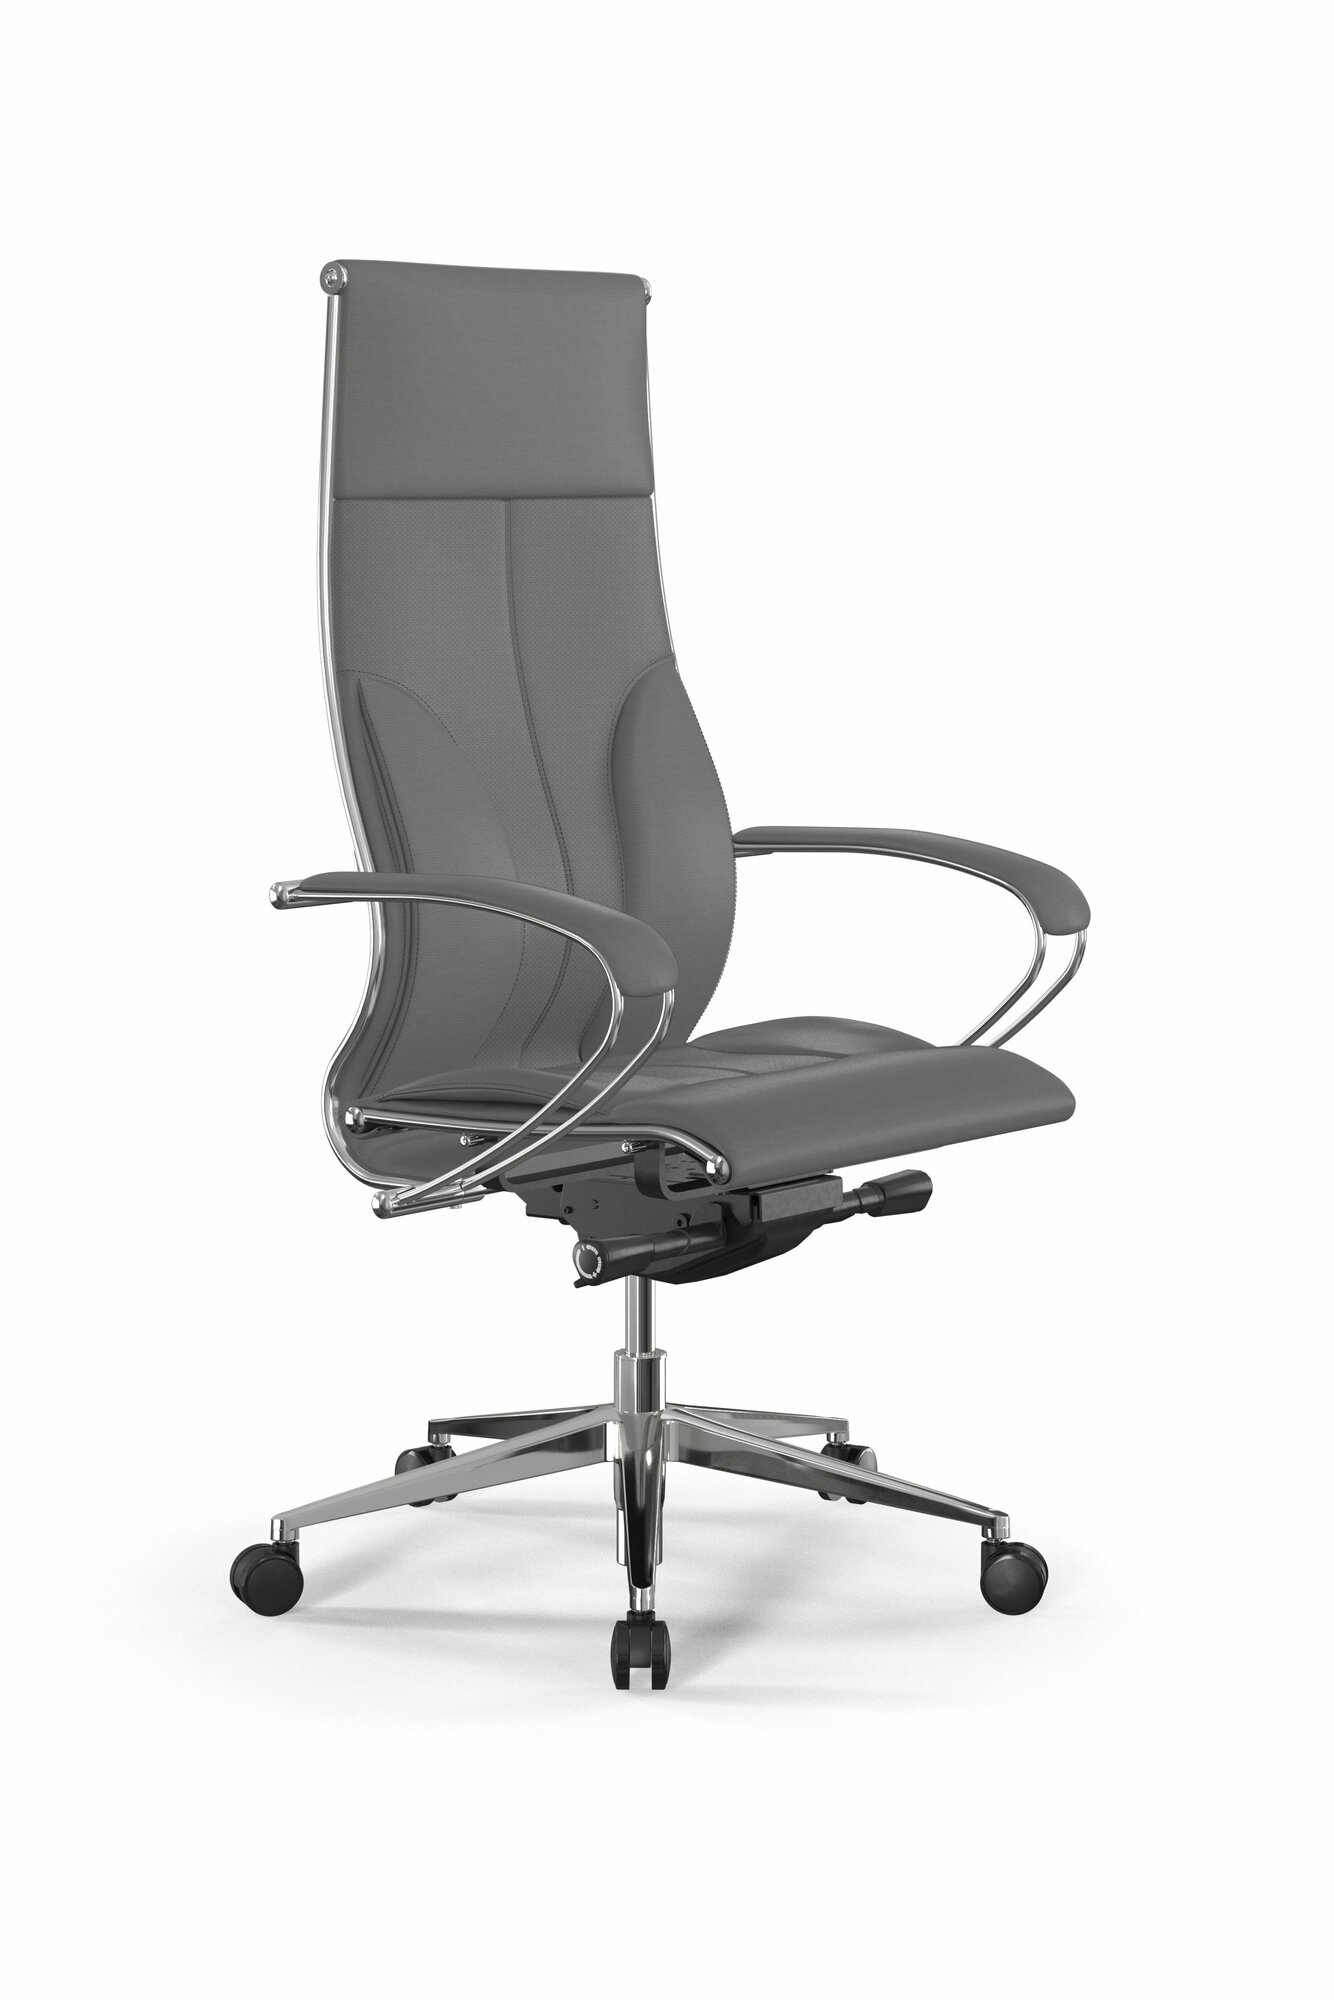 Компьютерное офисное кресло метта Samurai L1-10K - Infinity /Kc06/Nc06/K2cL(M26. B32. G25. W03) (Серый)